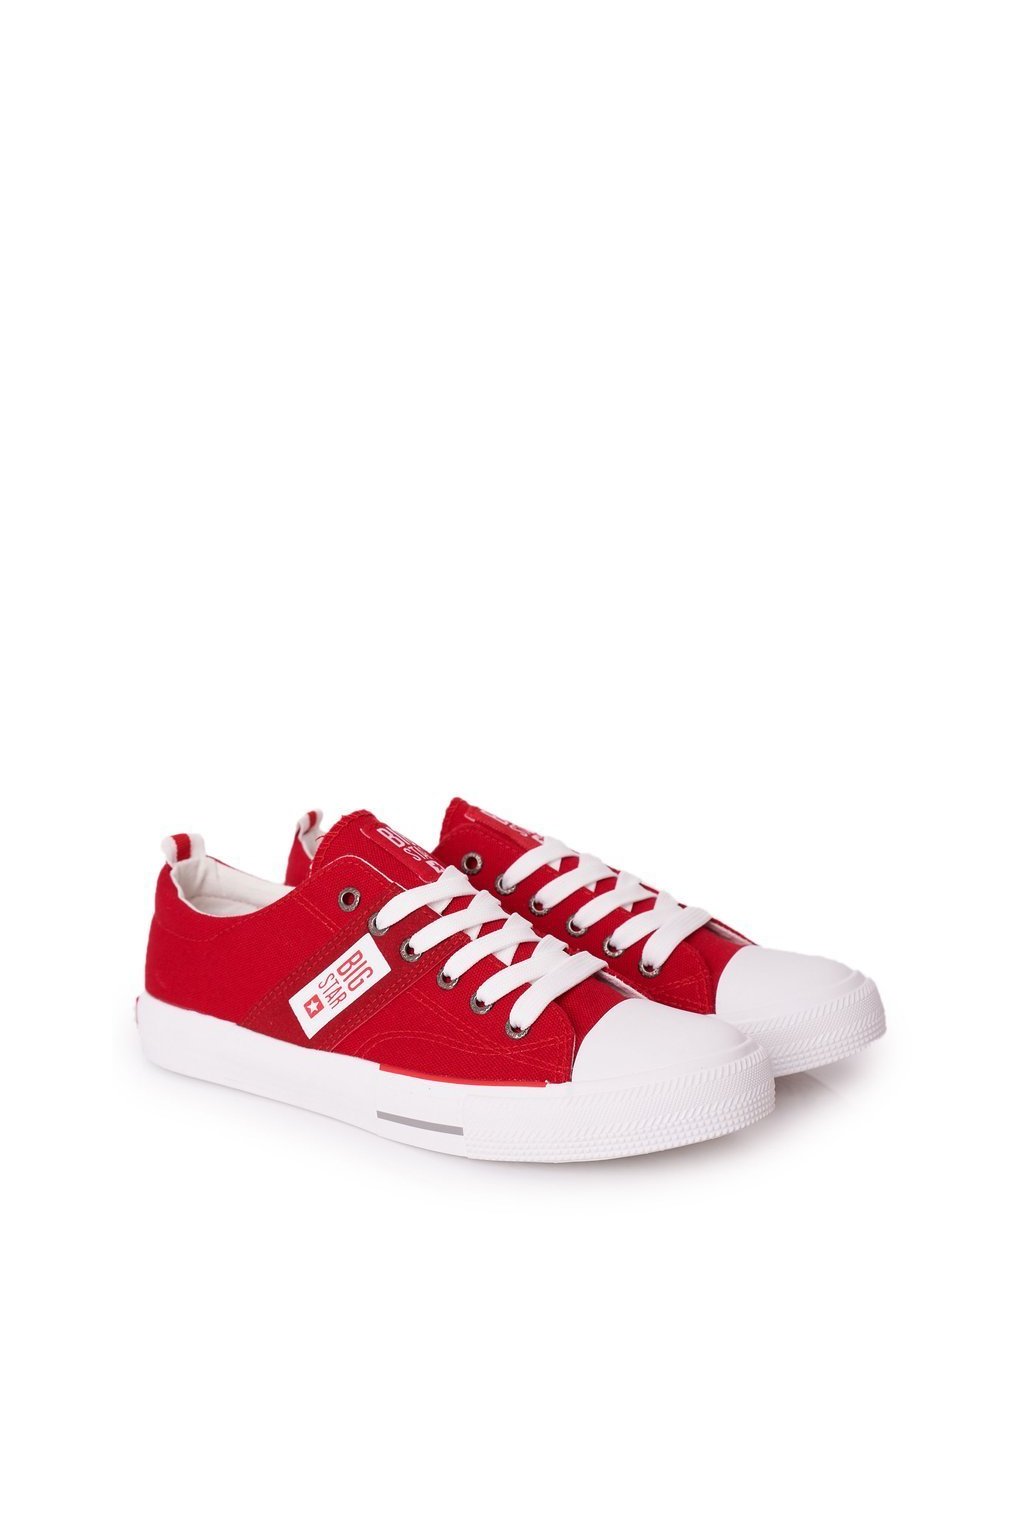 Biela obuv kód topánok HH174040 RED